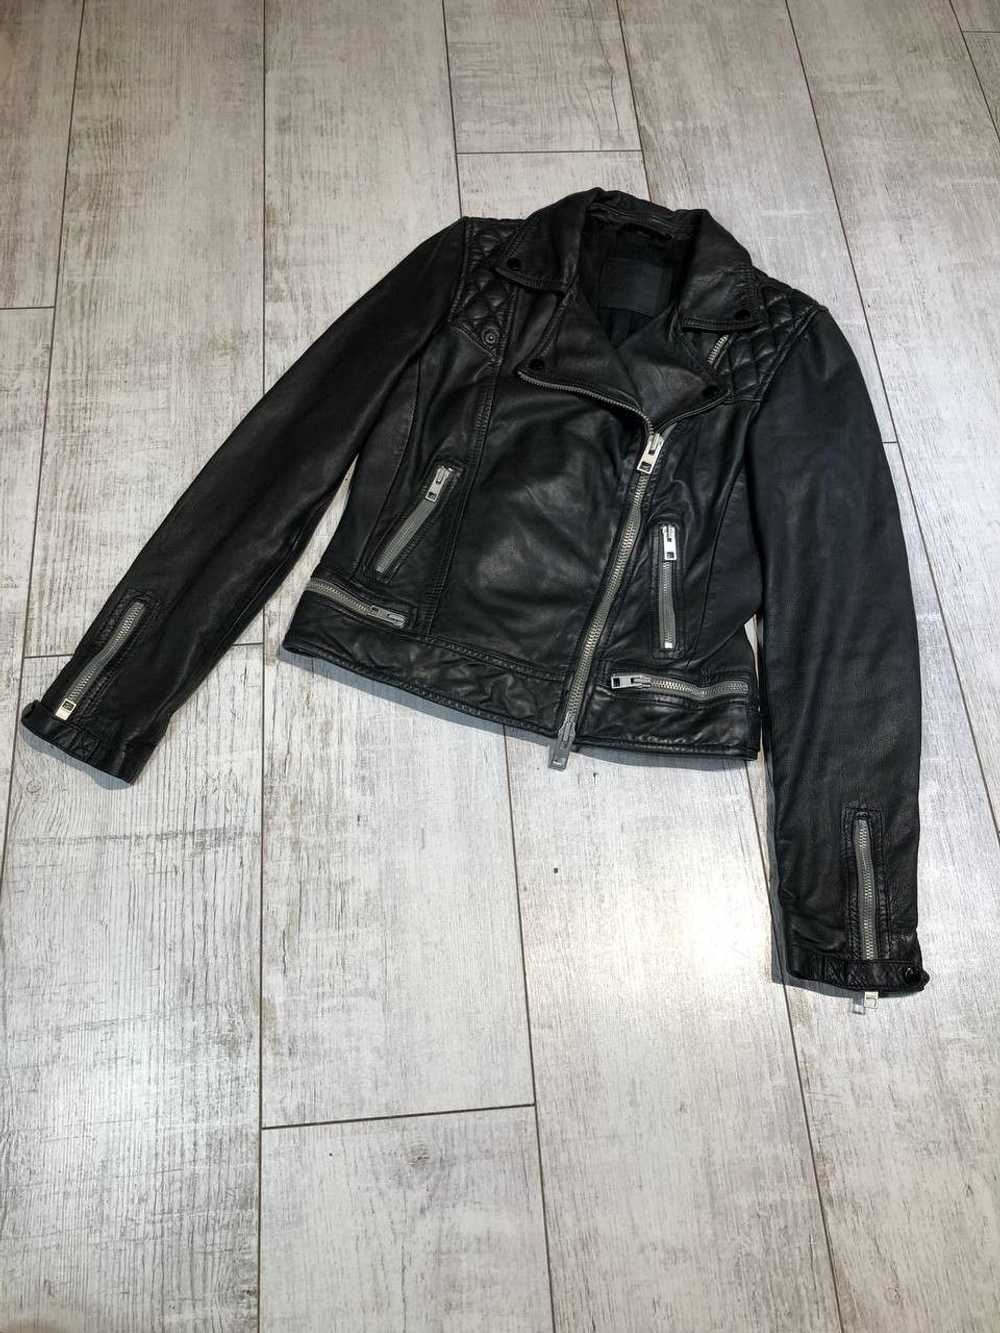 Allsaints × Avant Garde × Streetwear Leather Jack… - image 1